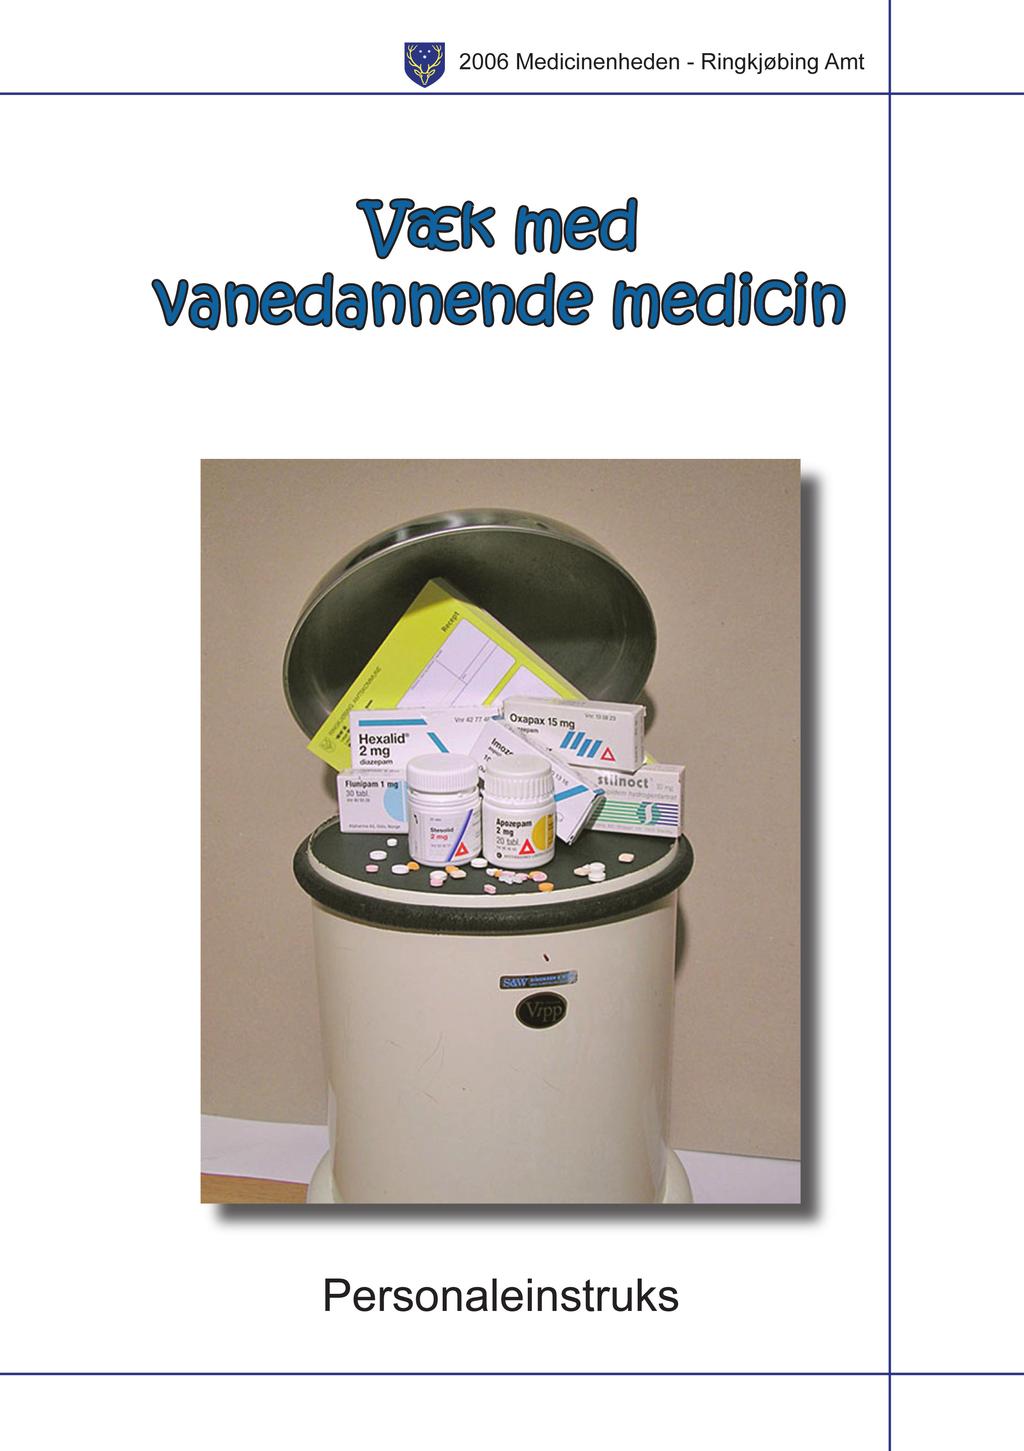 Der blev udarbejdet to brochure til orientering af henholdsvis patienter og personale om de nye regler. En ny udgave fra Region Midtjylland af brochuren kan findes på http://www.sundhed.dk/ møder.